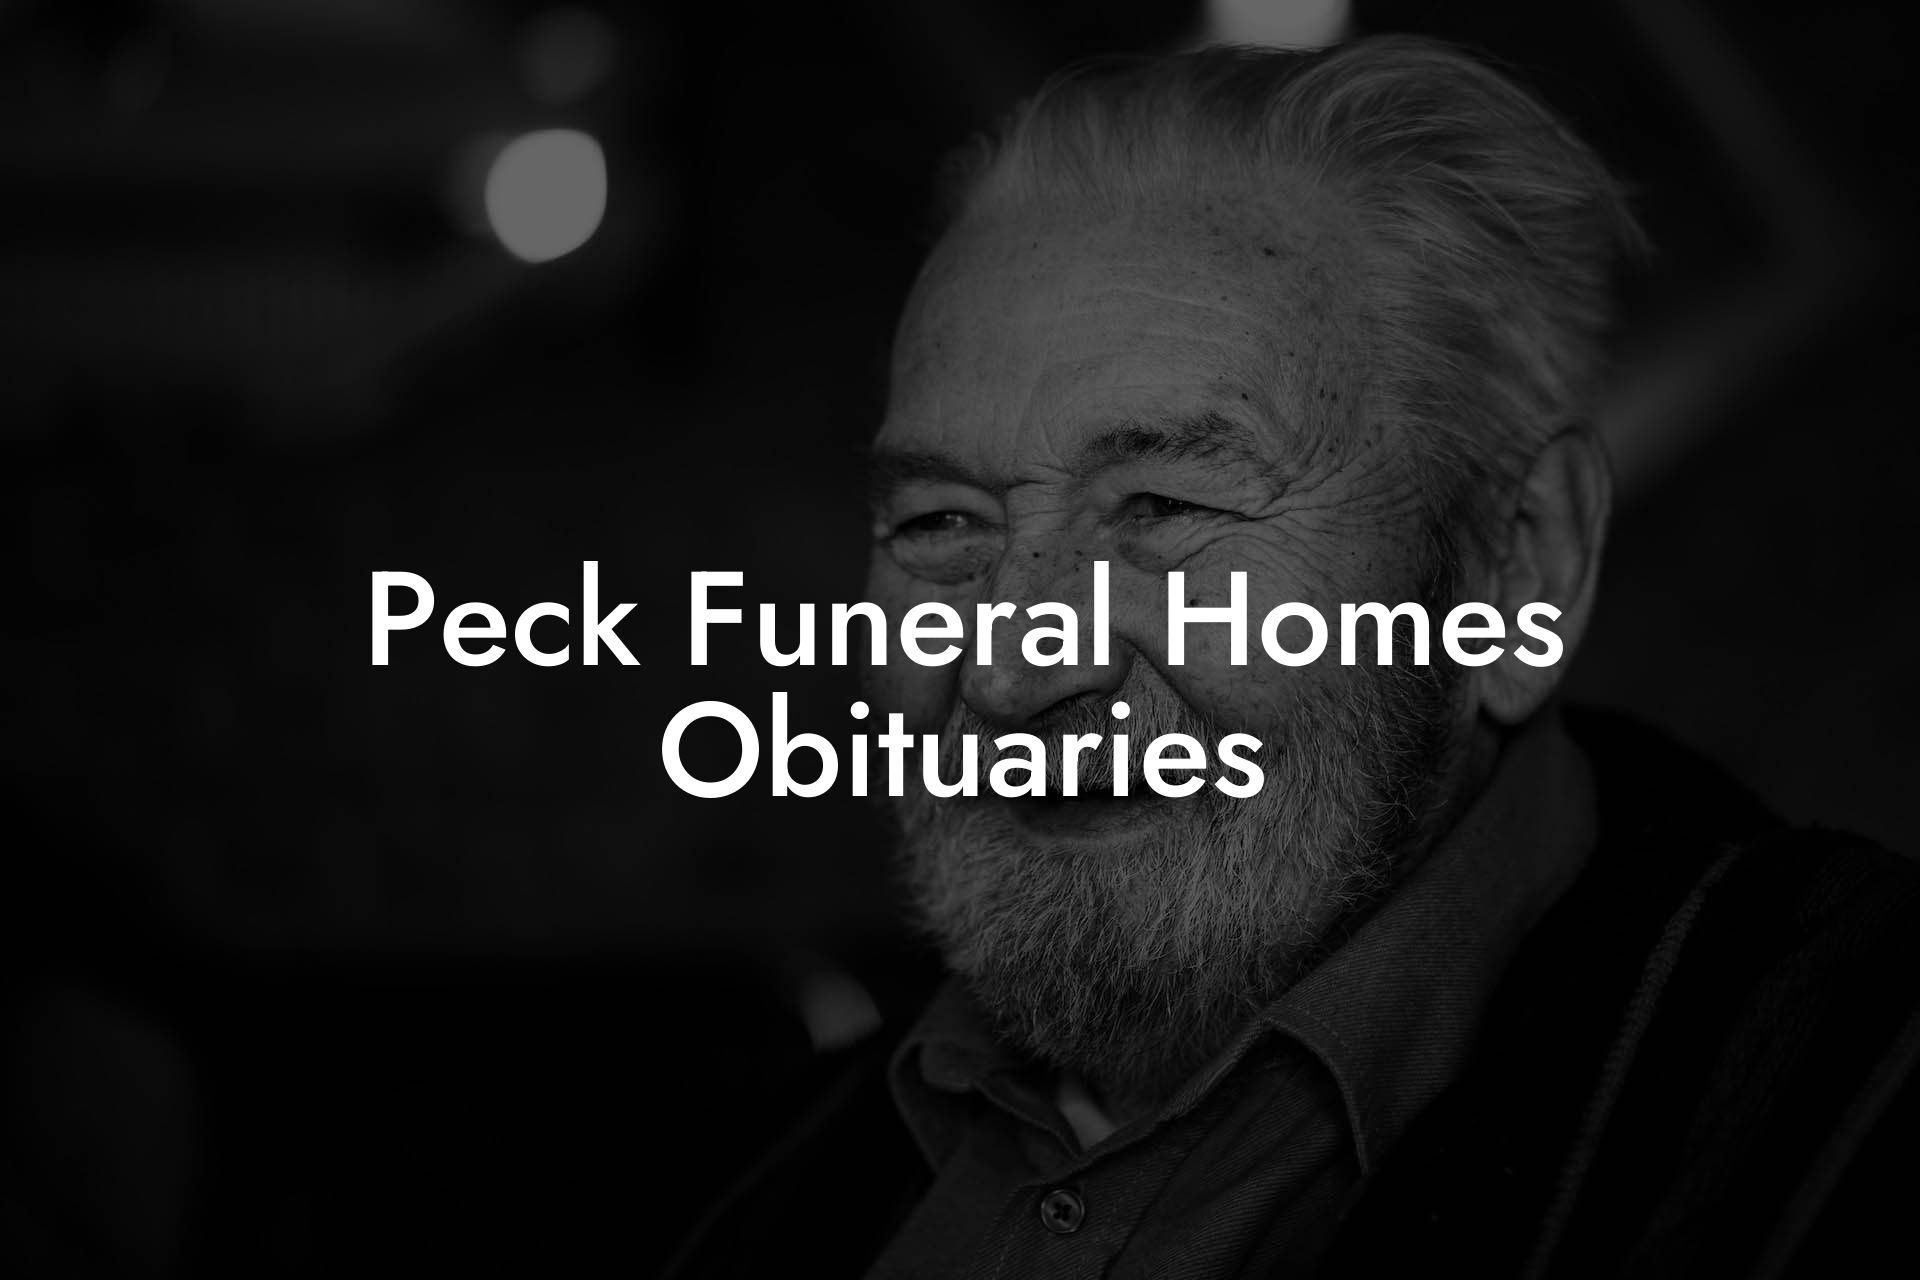 Peck Funeral Homes Obituaries